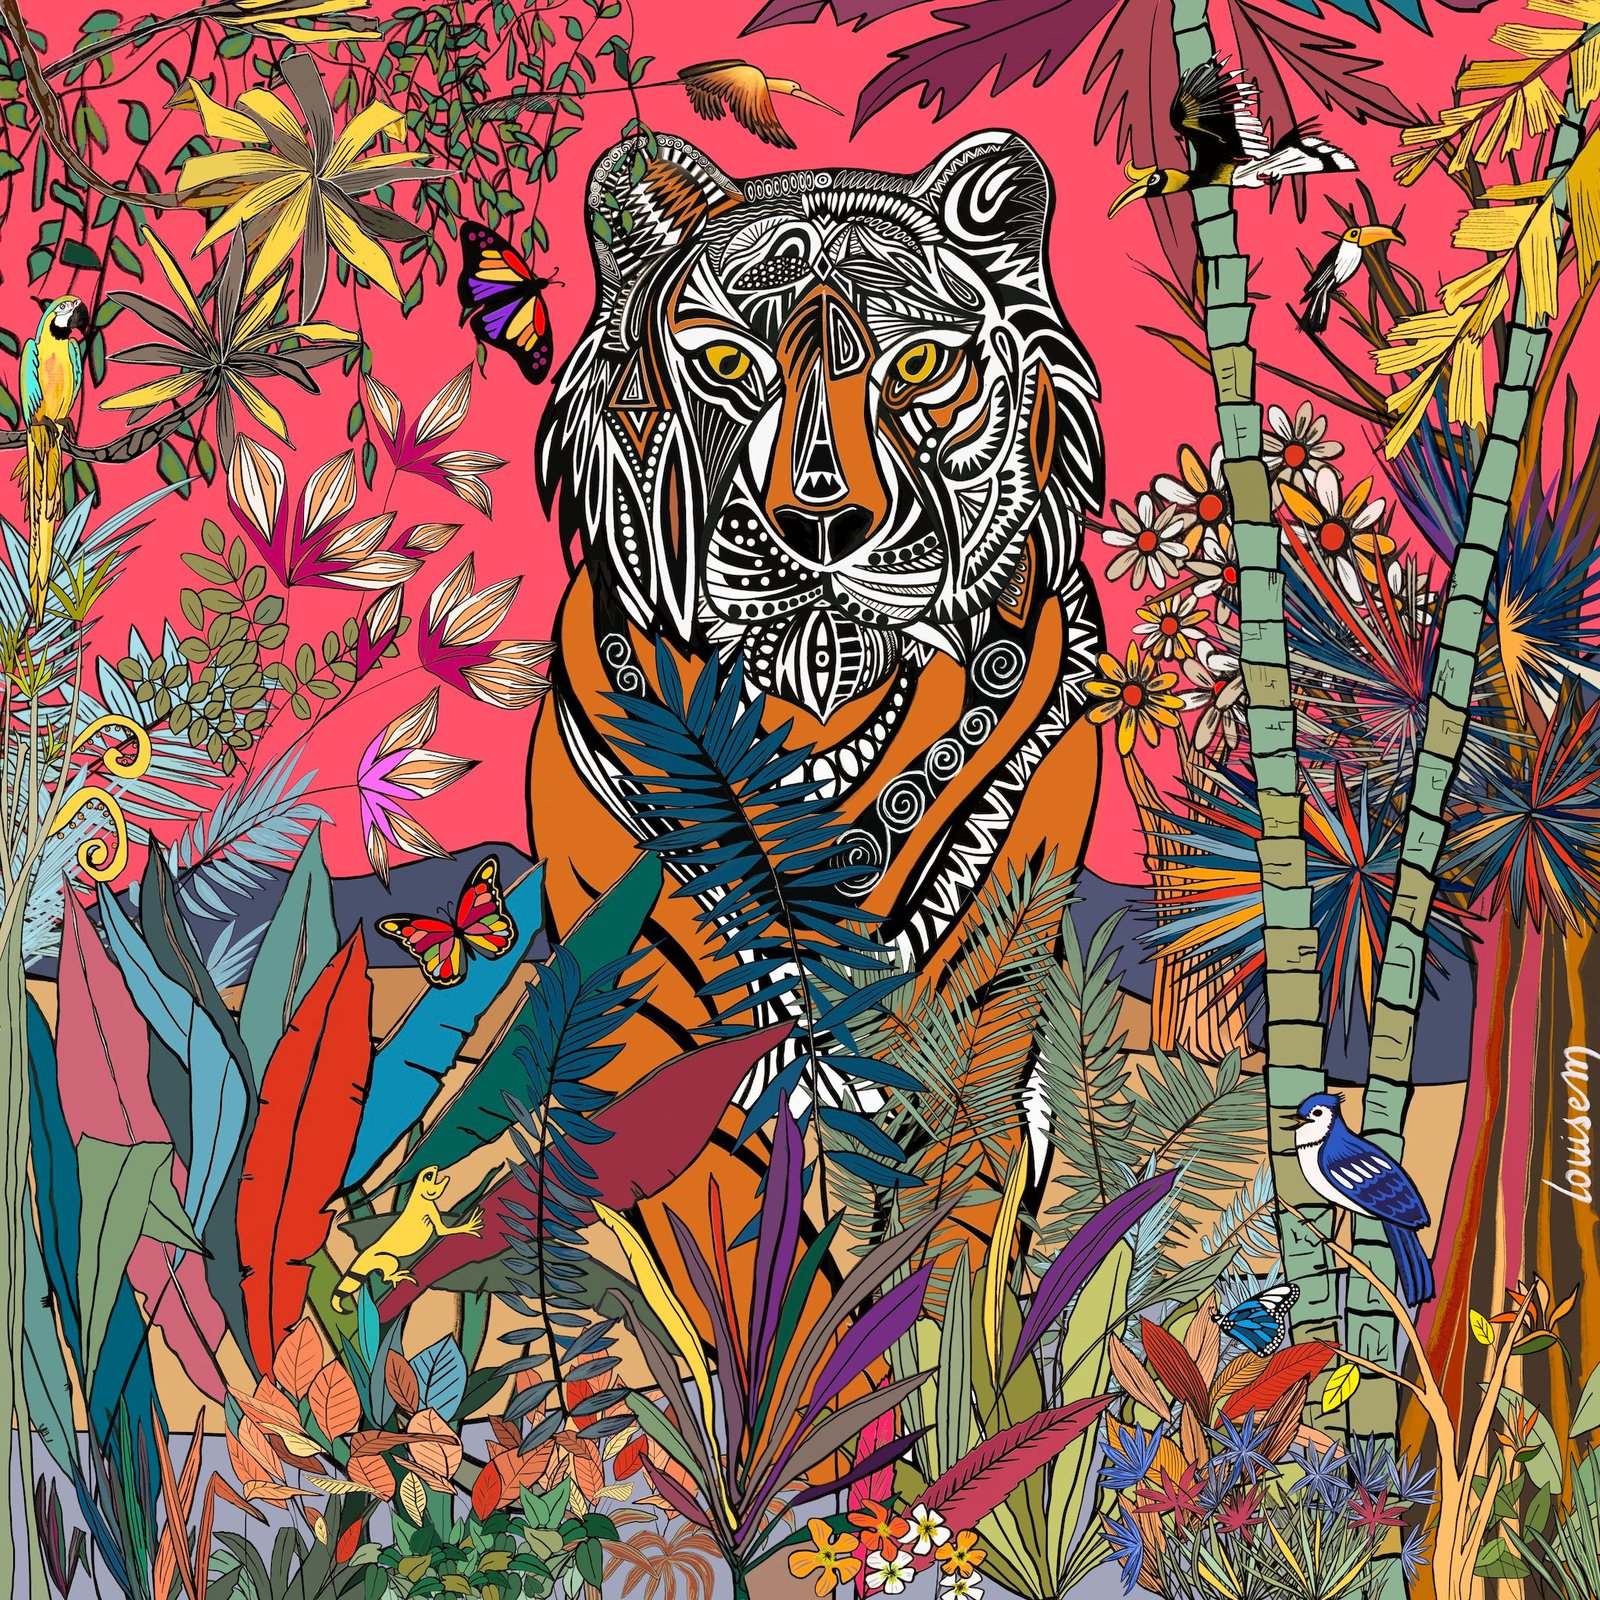 Dessin original de l'article LouiseM. Le tigre, roi de la jungle, est ici décliné dans des teintes rosées.